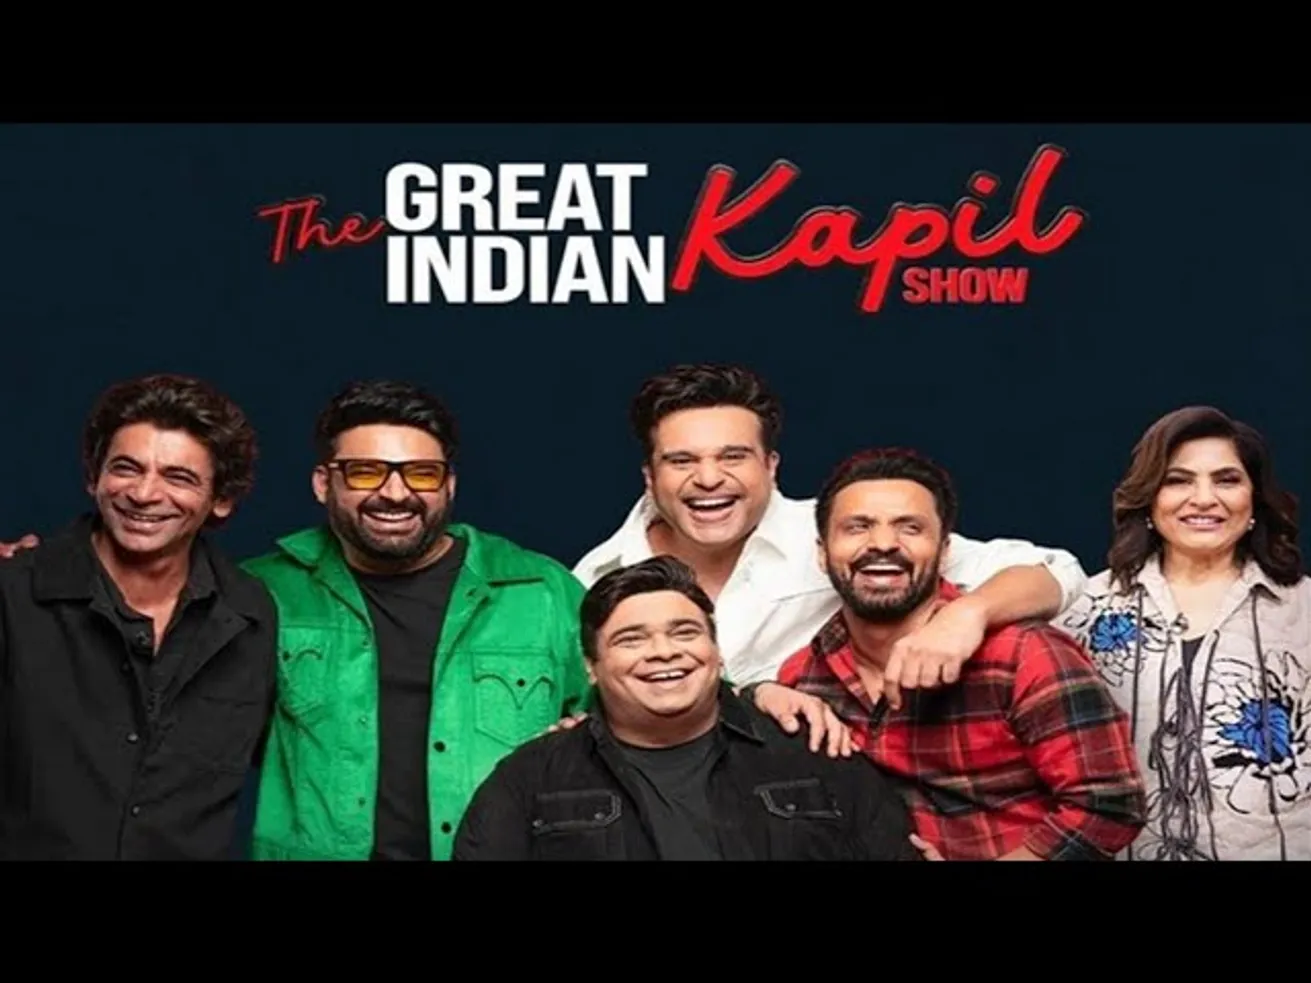 The Great Indian Kapil Show S1E1 | Kapil Sharma - YouTube